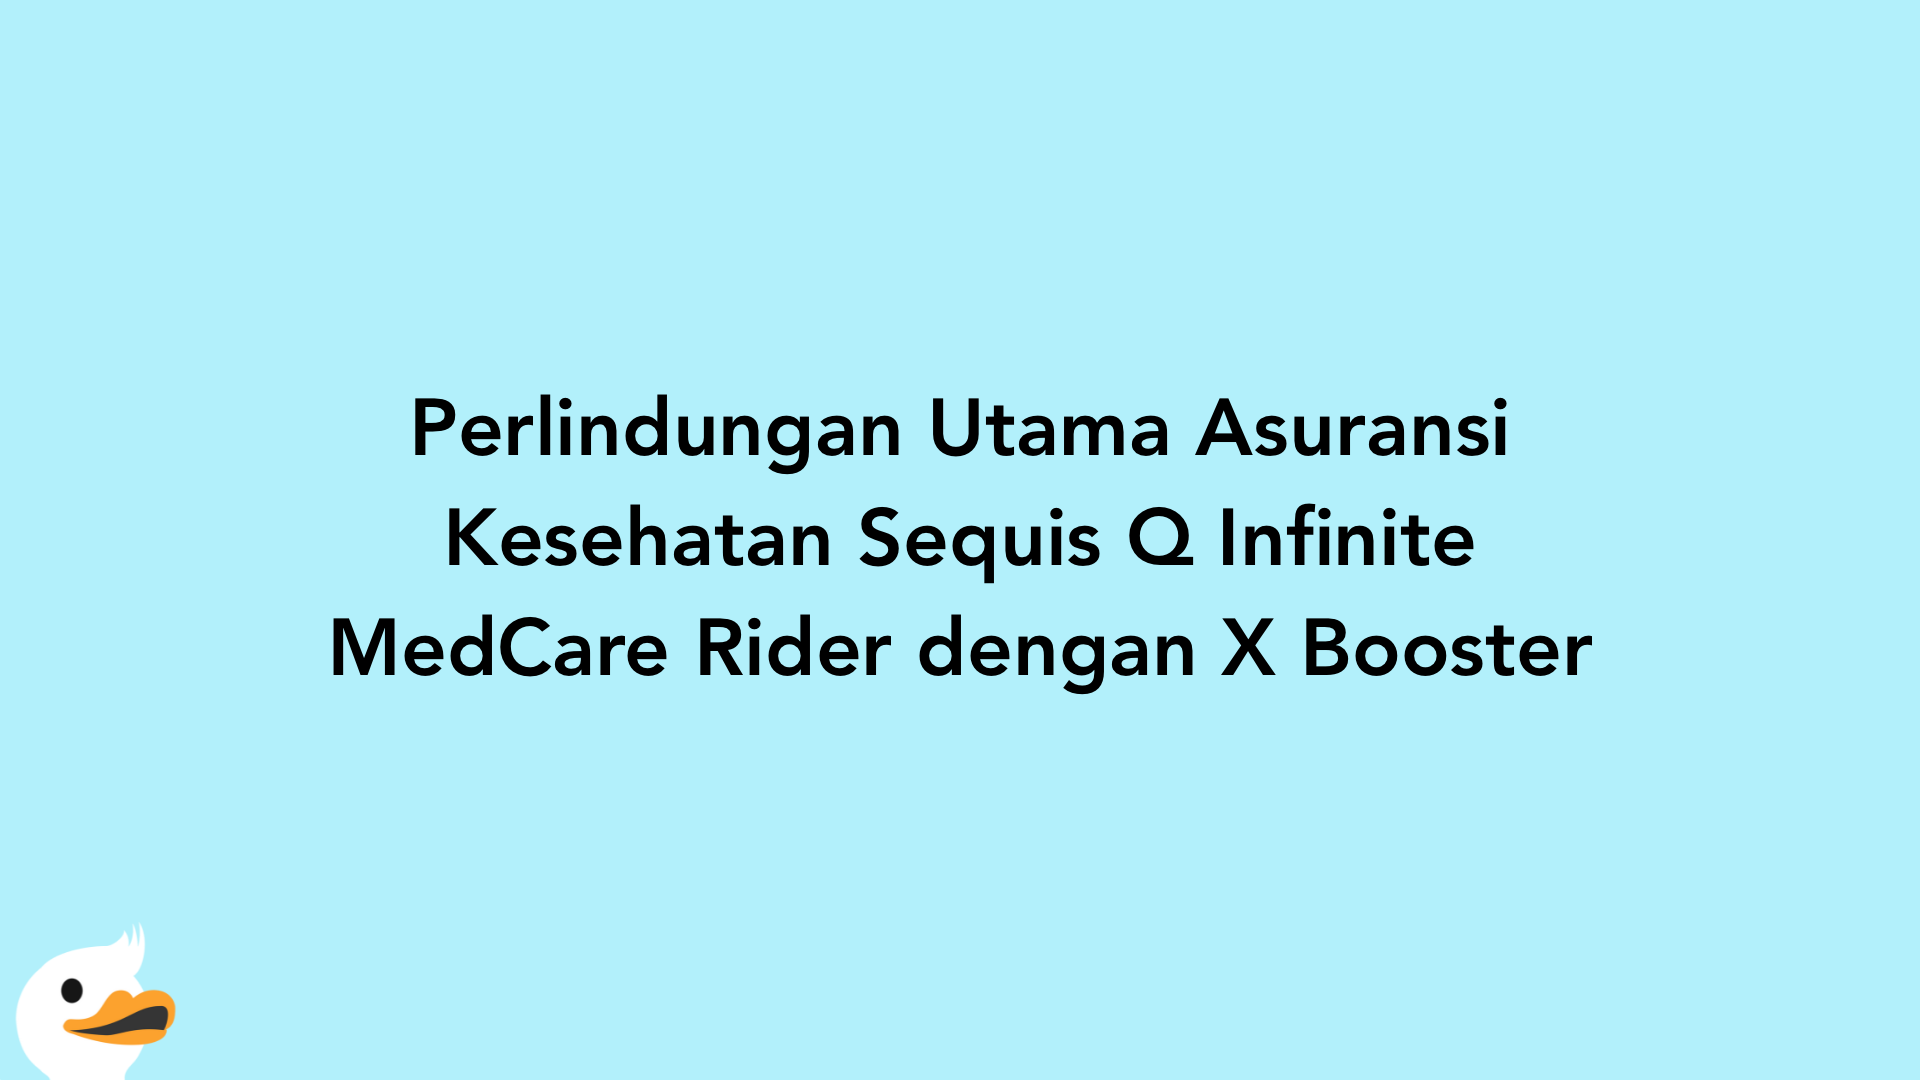 Perlindungan Utama Asuransi Kesehatan Sequis Q Infinite MedCare Rider dengan X Booster